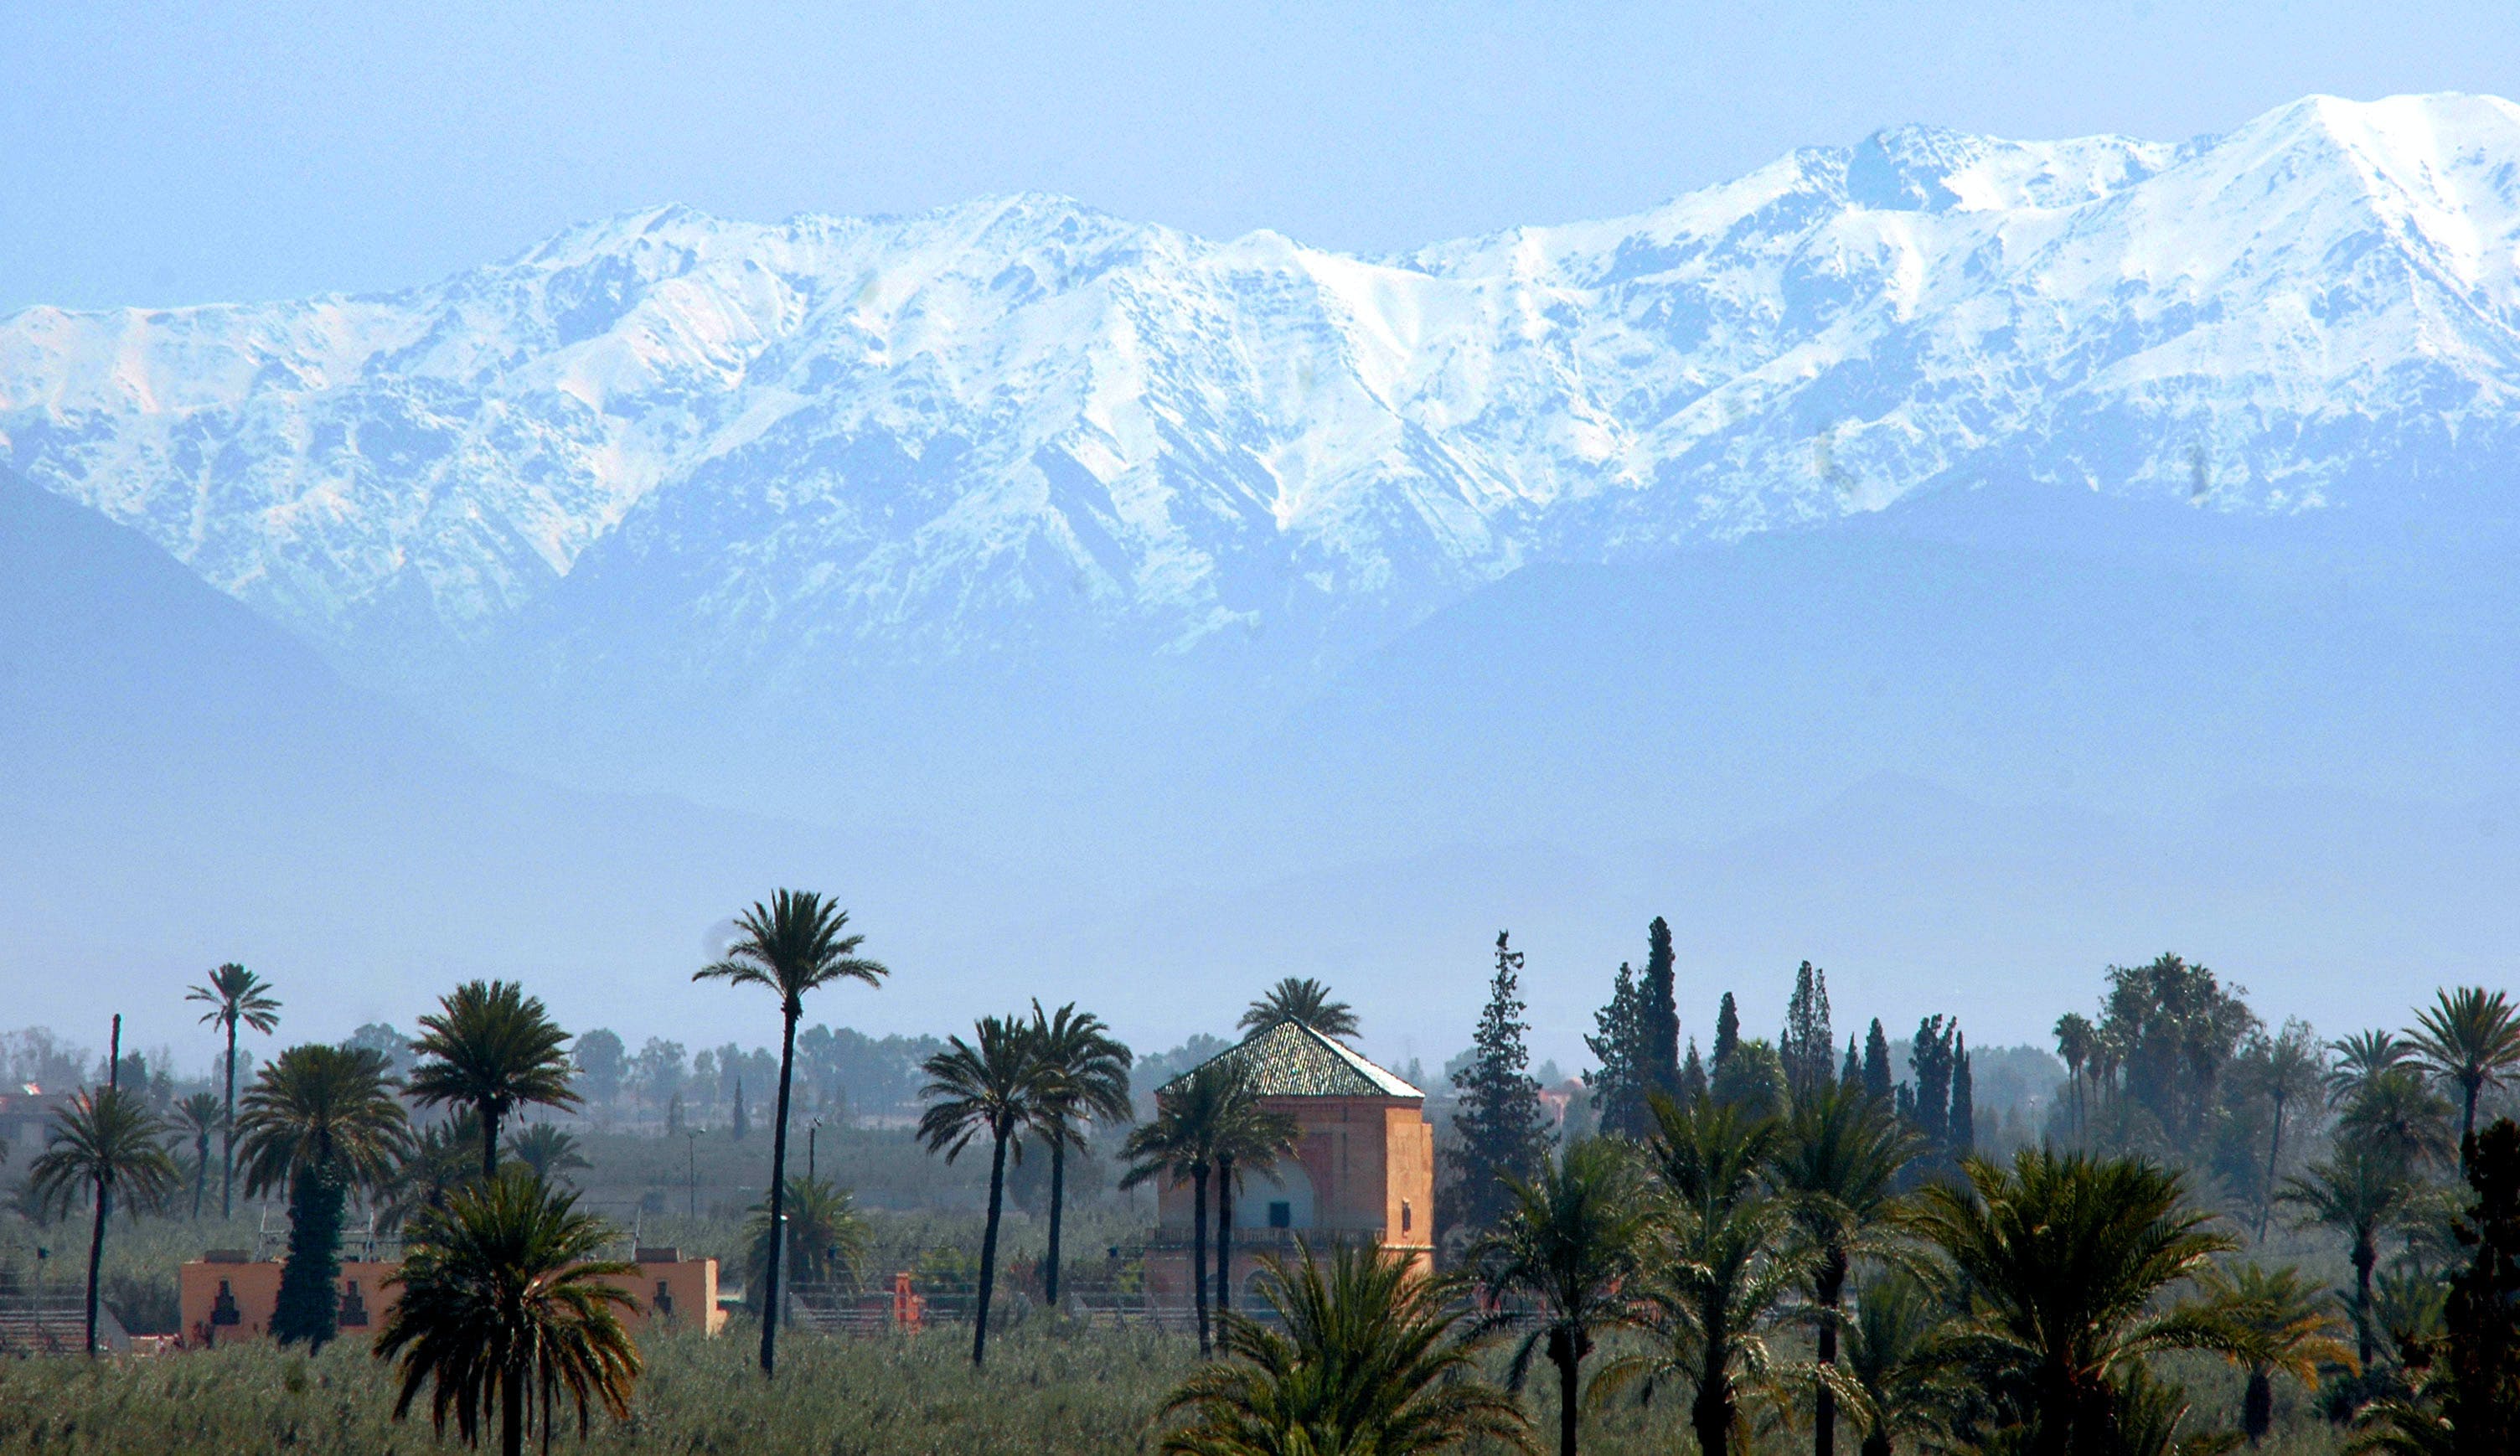 Marrakech, La città rossa Marocchina che ha dato nome al Paese